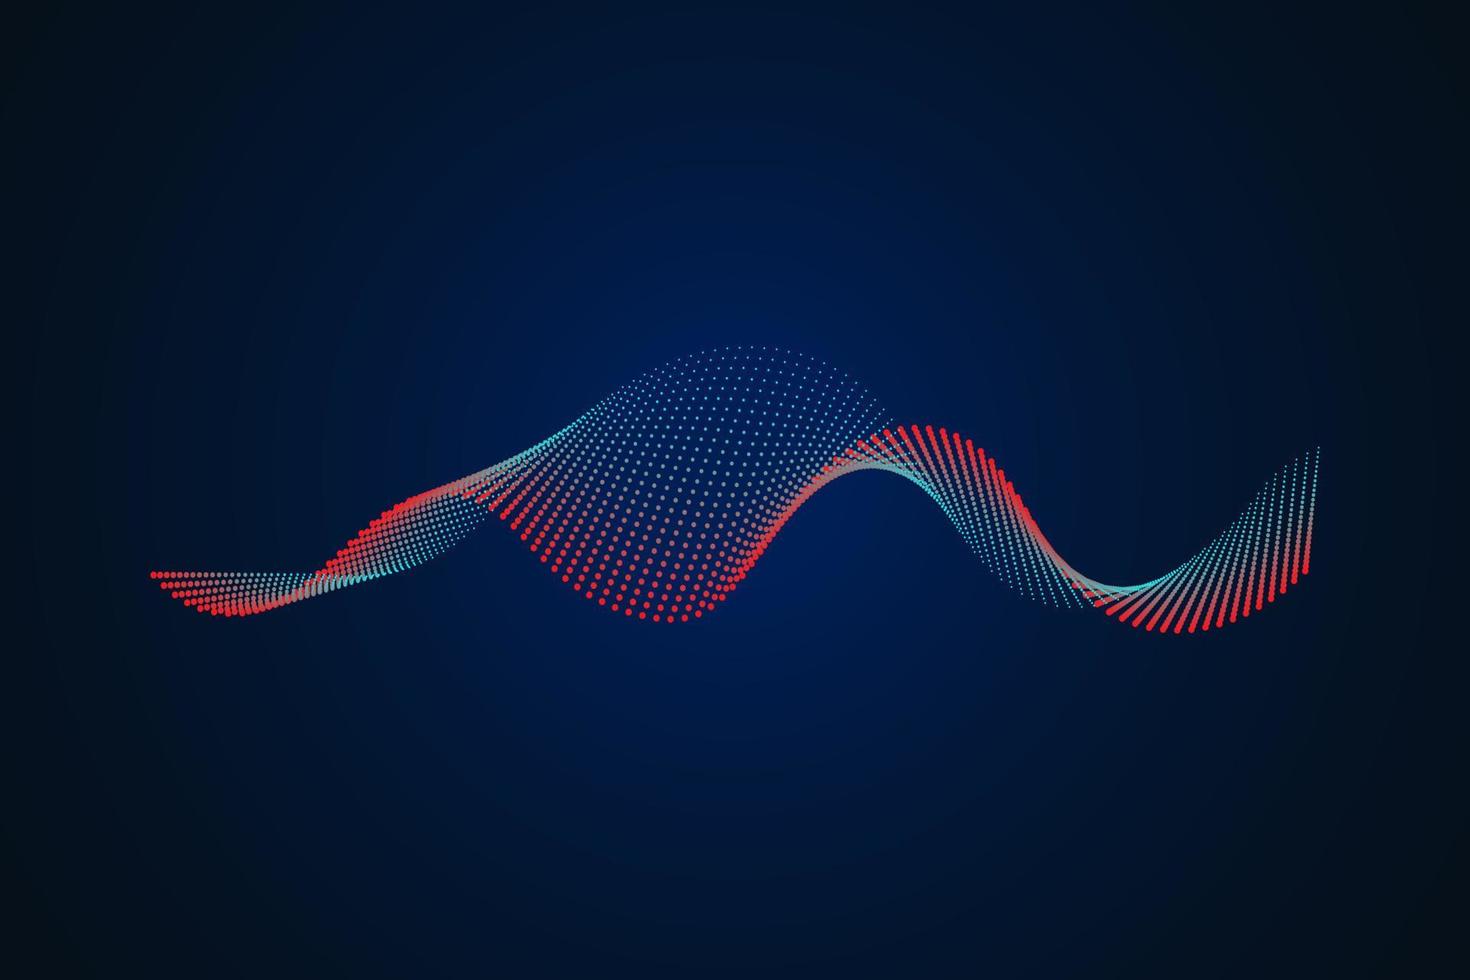 ljudvåg illustration på en mörk bakgrund. abstrakta blå digitala equalizerindikatorer. vektor